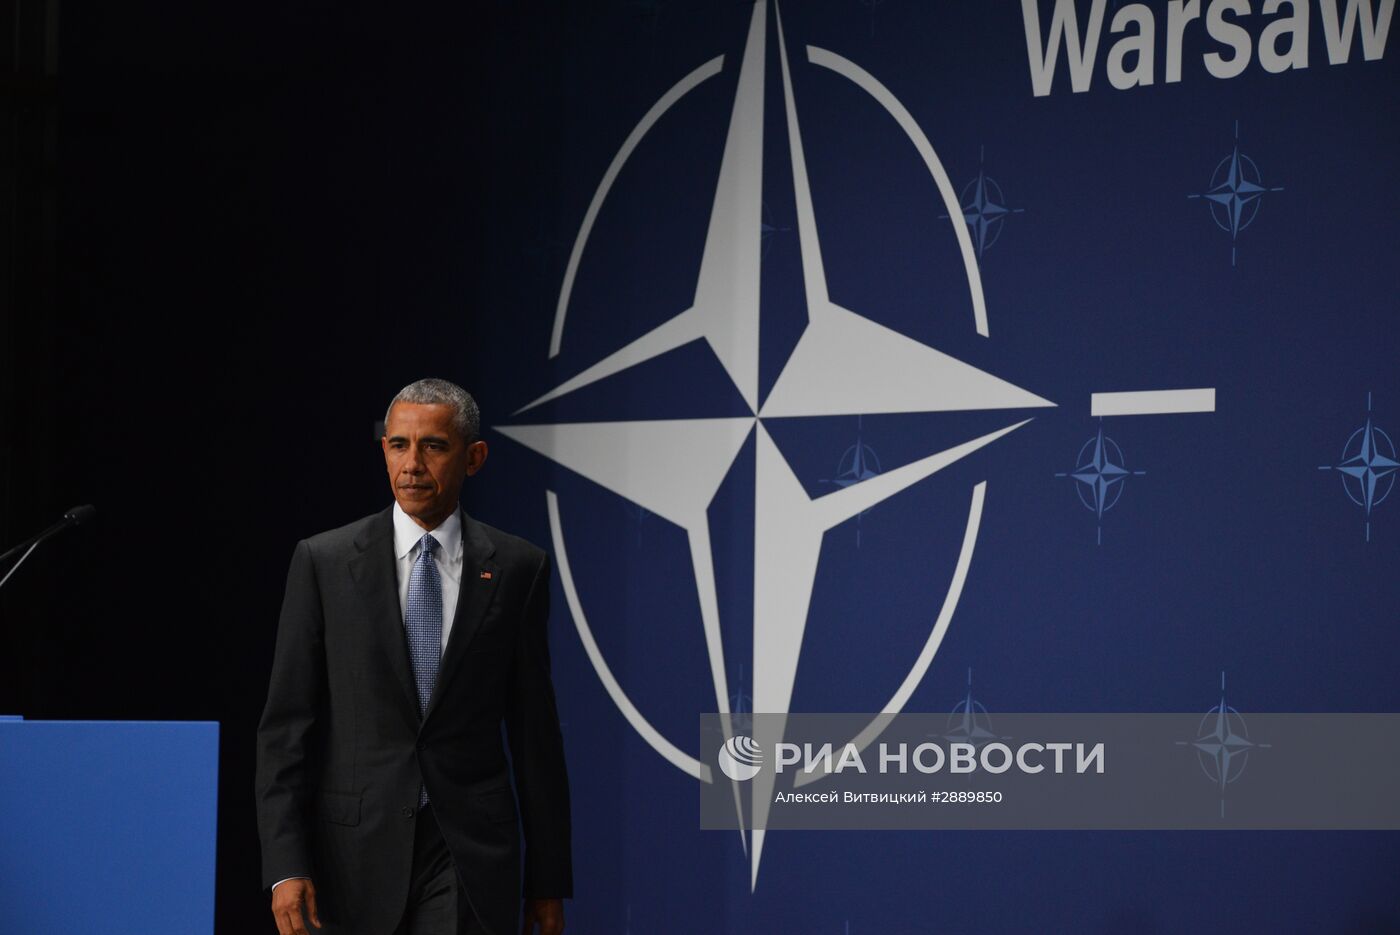 Саммит НАТО в Варшаве. Второй день